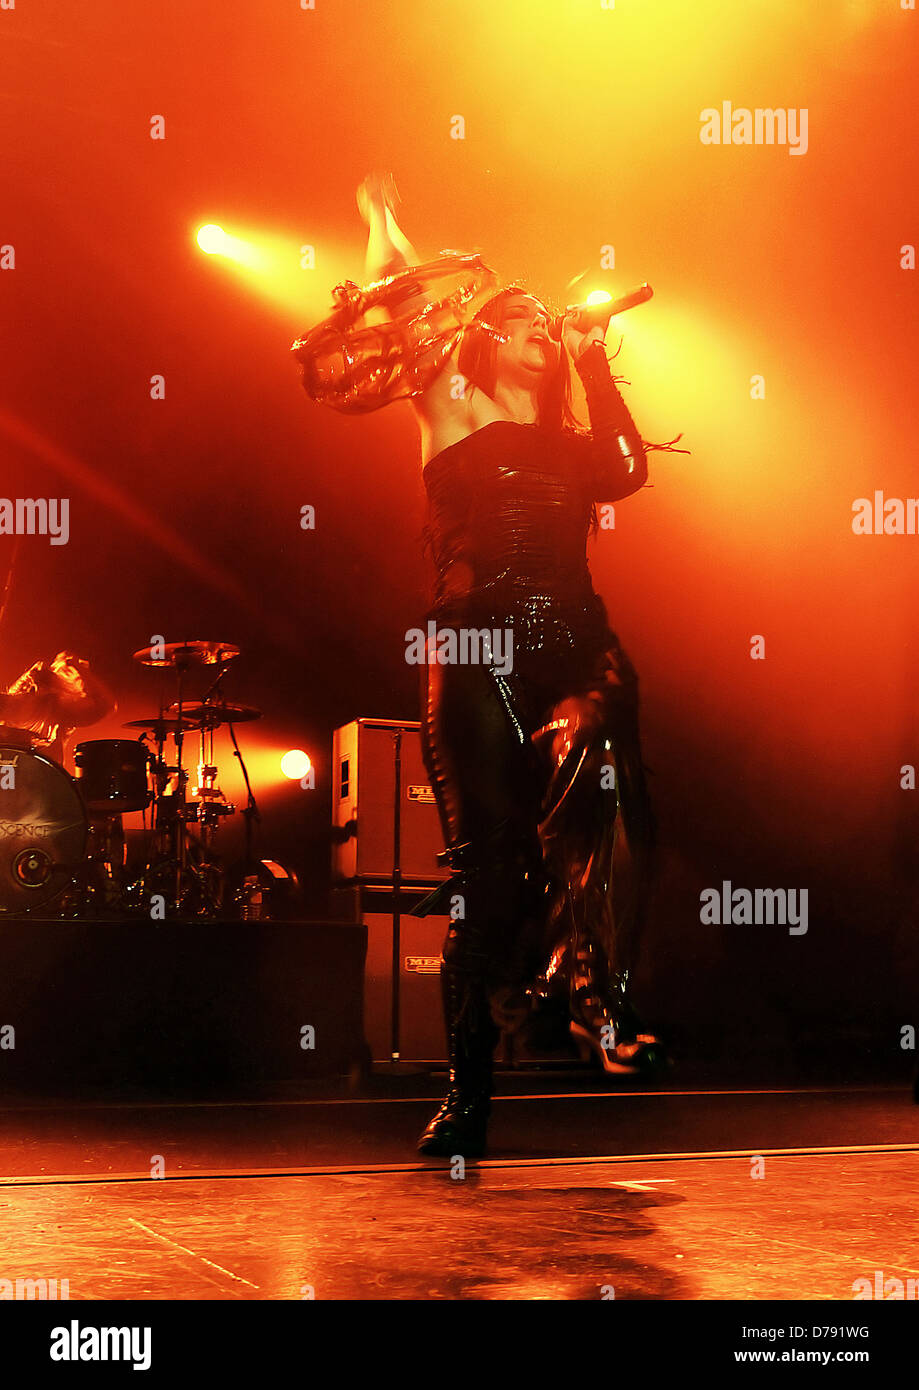 Amy Lee degli Evanescence si esibisce dal vivo a Manchester Apollo Manchester, Inghilterra - 07.11.11 Foto Stock